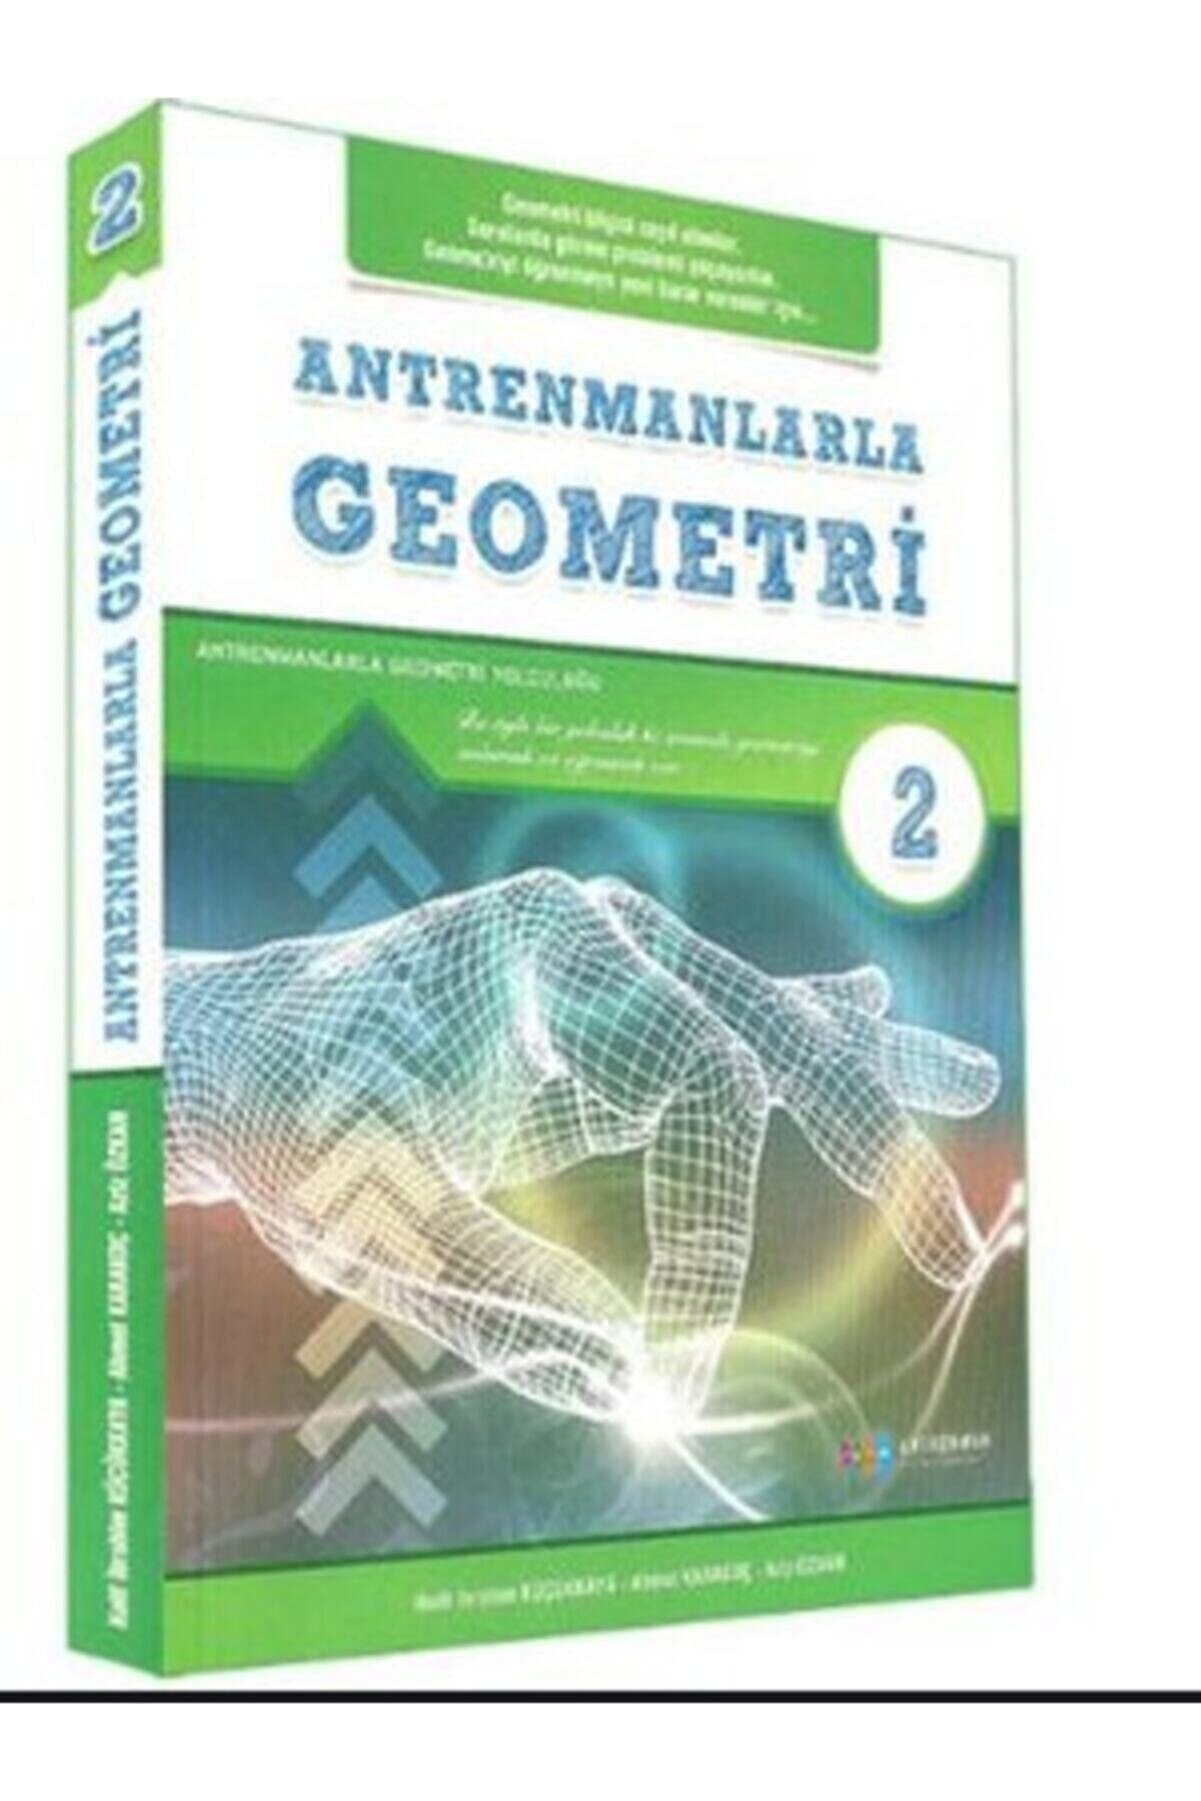 Antrenman Yayınları Antrenmanlarla Geometri - 2. Kitap Antrenman Yayınları 2021